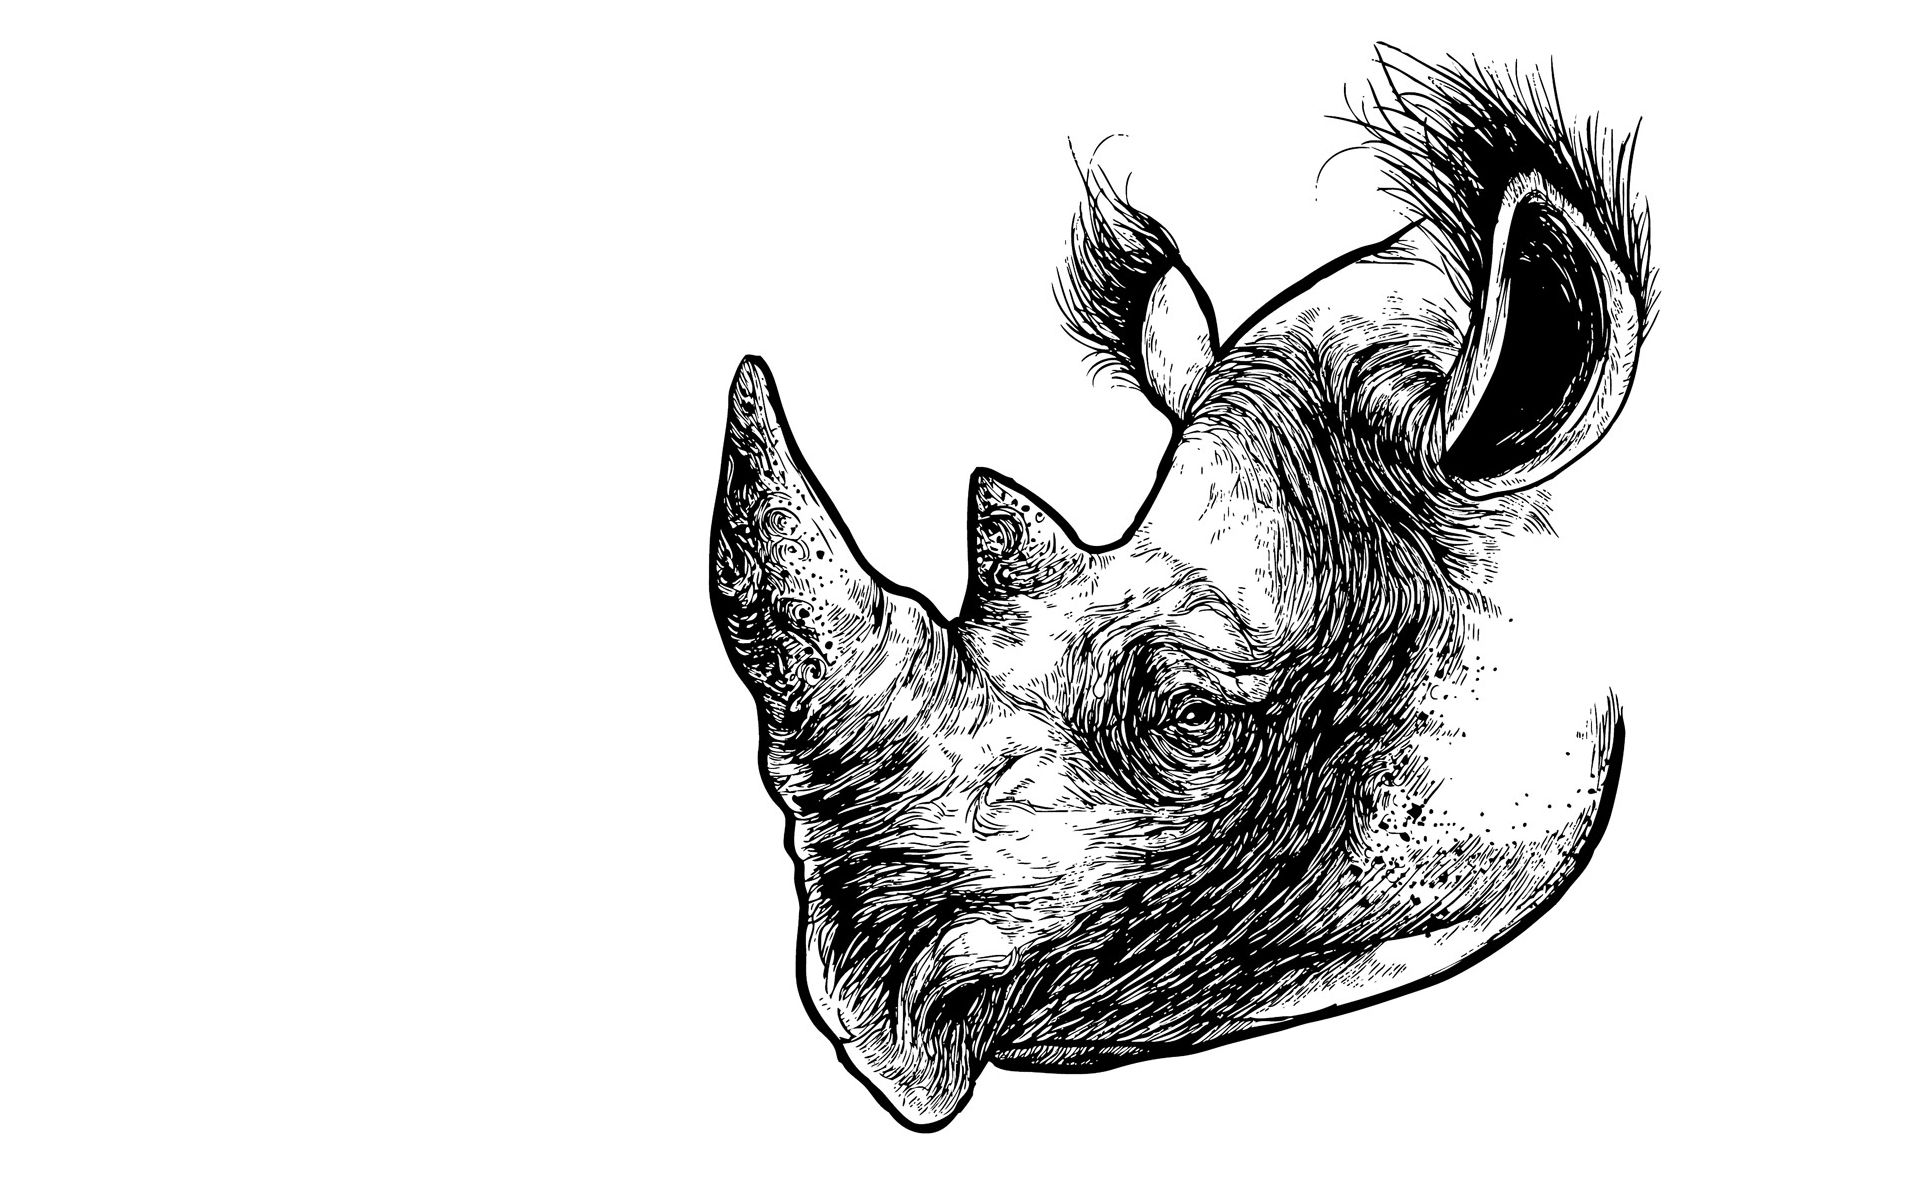 Скачать обои бесплатно Животные, Носорог картинка на рабочий стол ПК